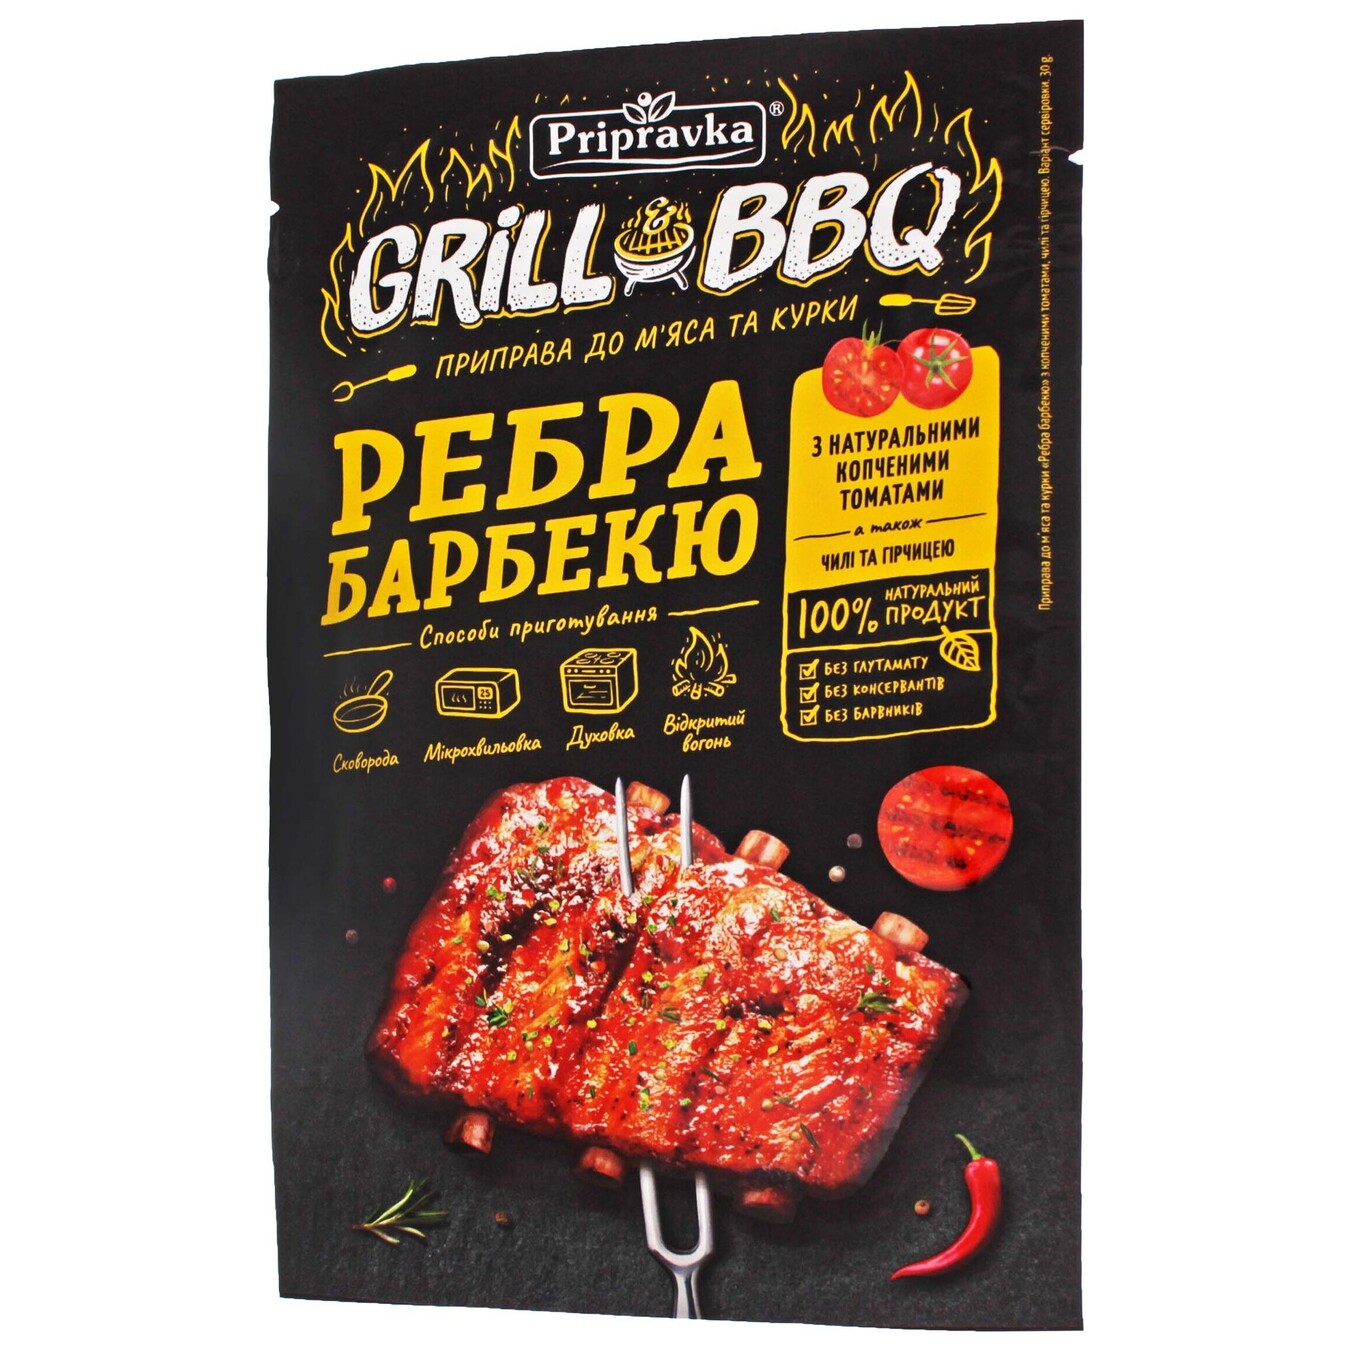 Приправа Pripravka Grill & BBQ для м'яса і курки Ребра барбекю з копченими томатами чилі і гірчицею 30г 2